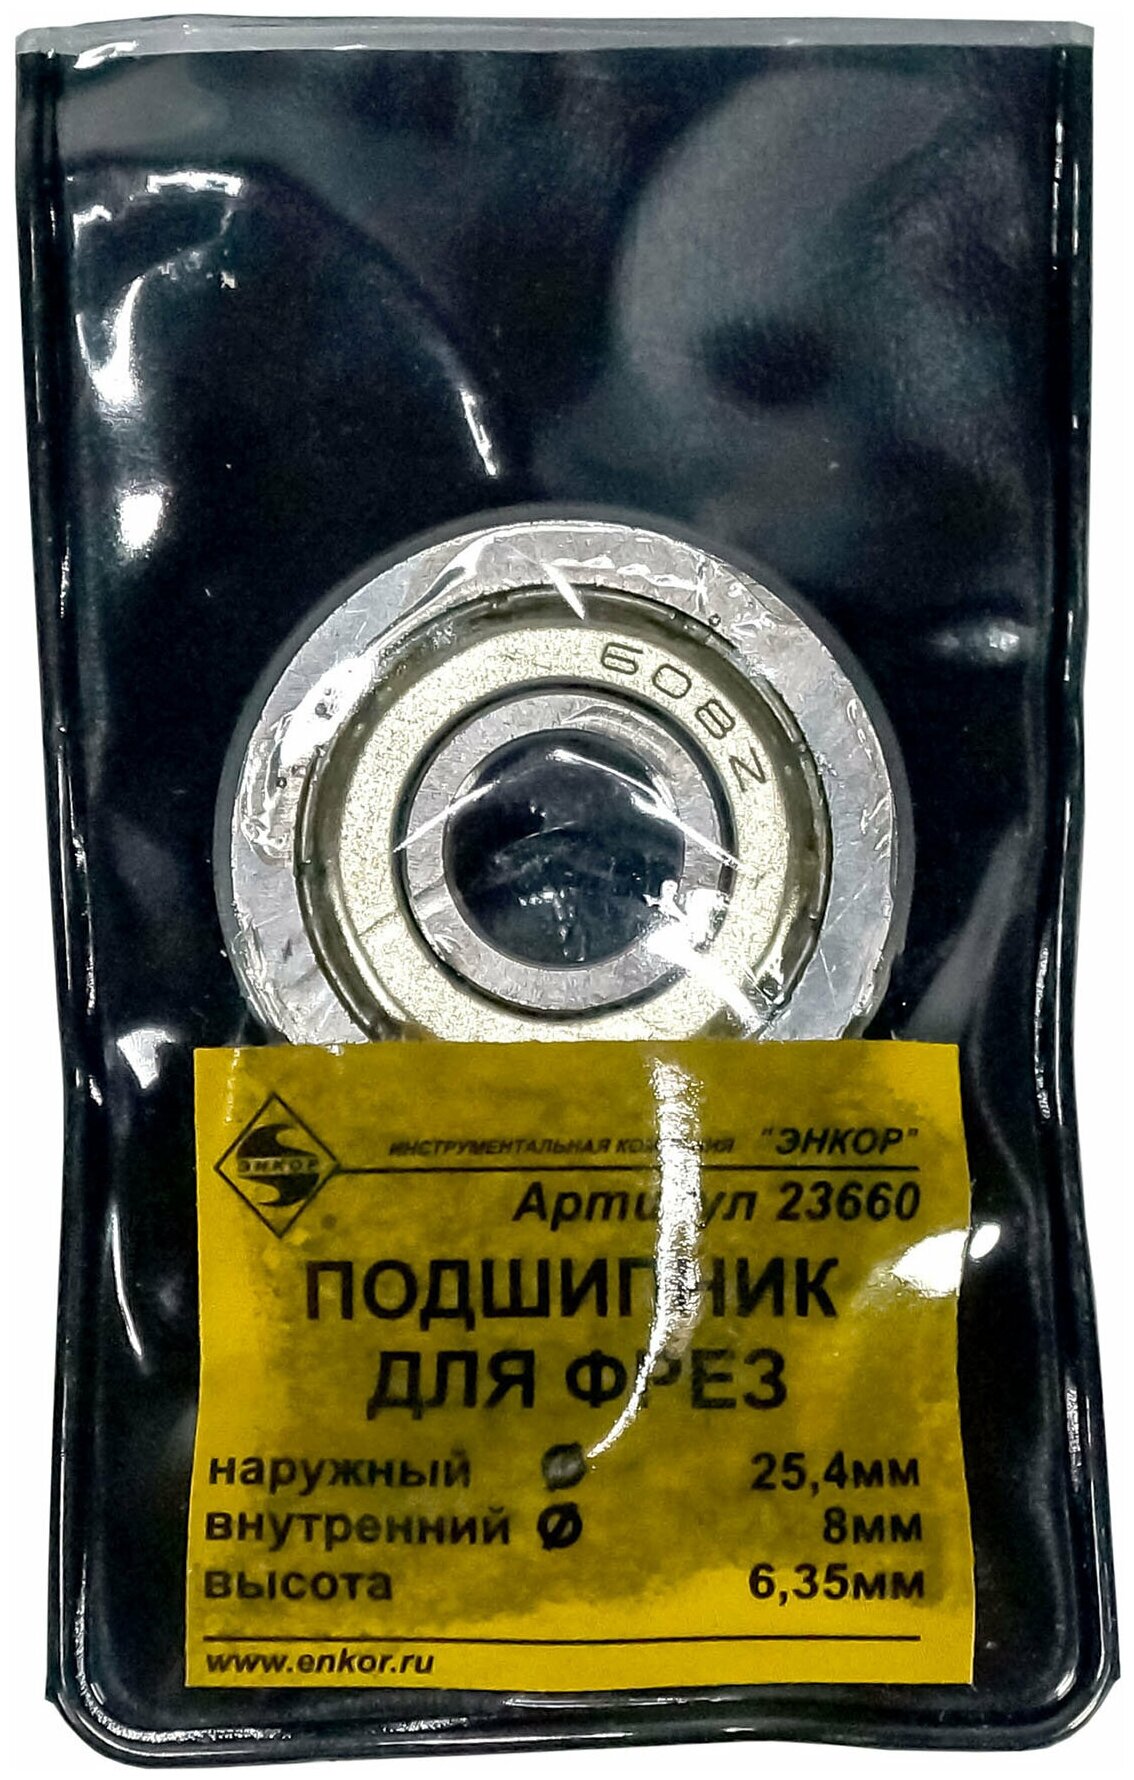 Подшипник для фрезы ф25,4 x 8 x 6,35 мм Энкор 23660